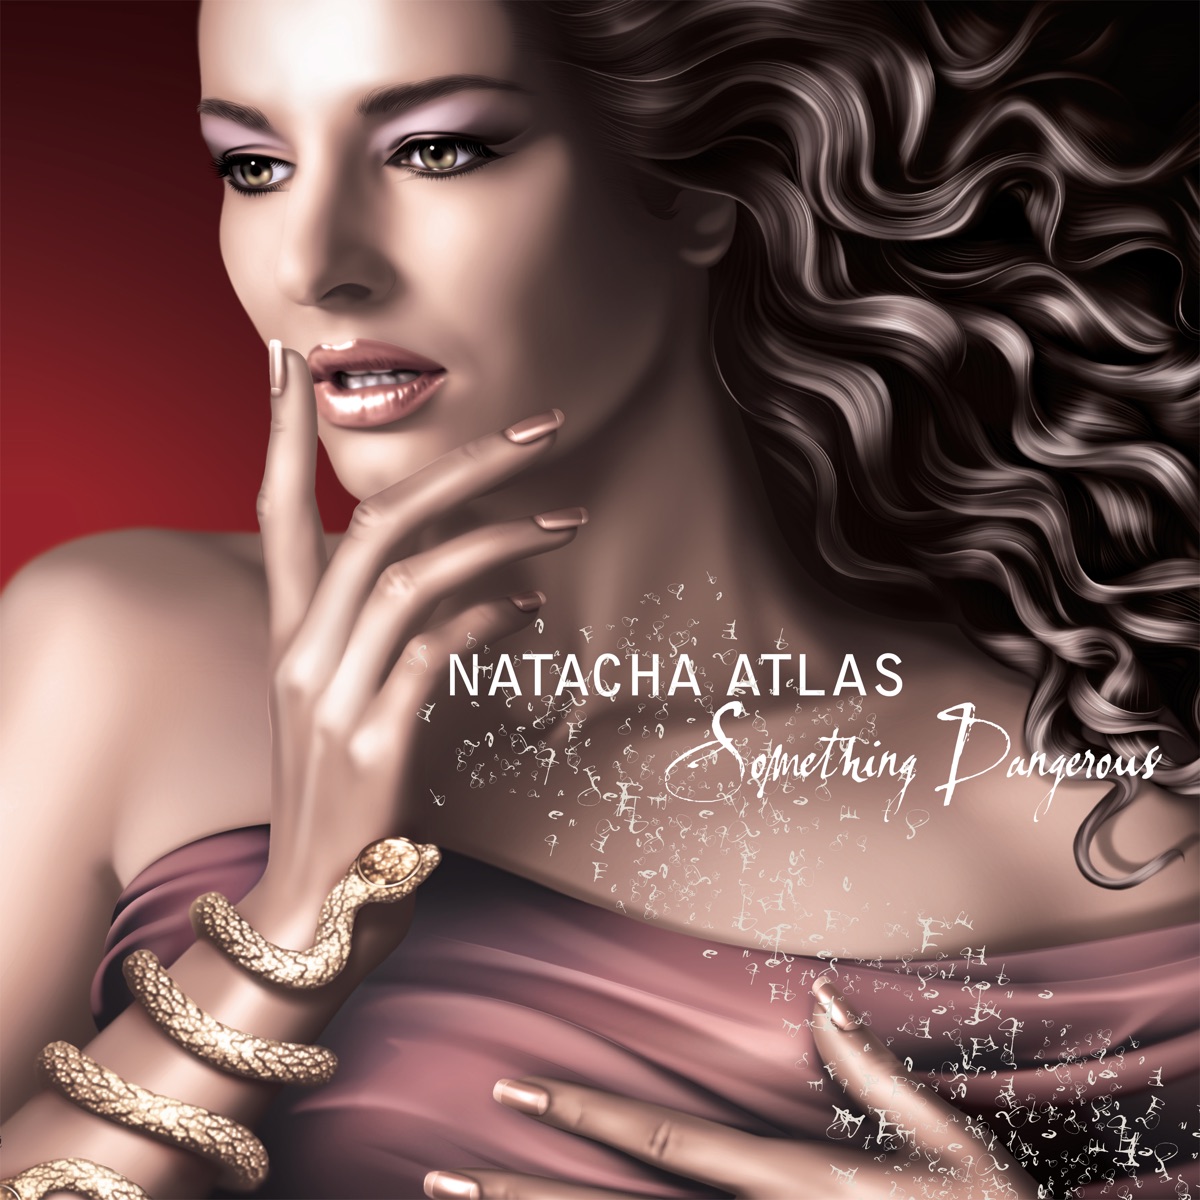 Mounqaliba - Rising (The Remixes) - Album by Natacha Atlas - Apple ...